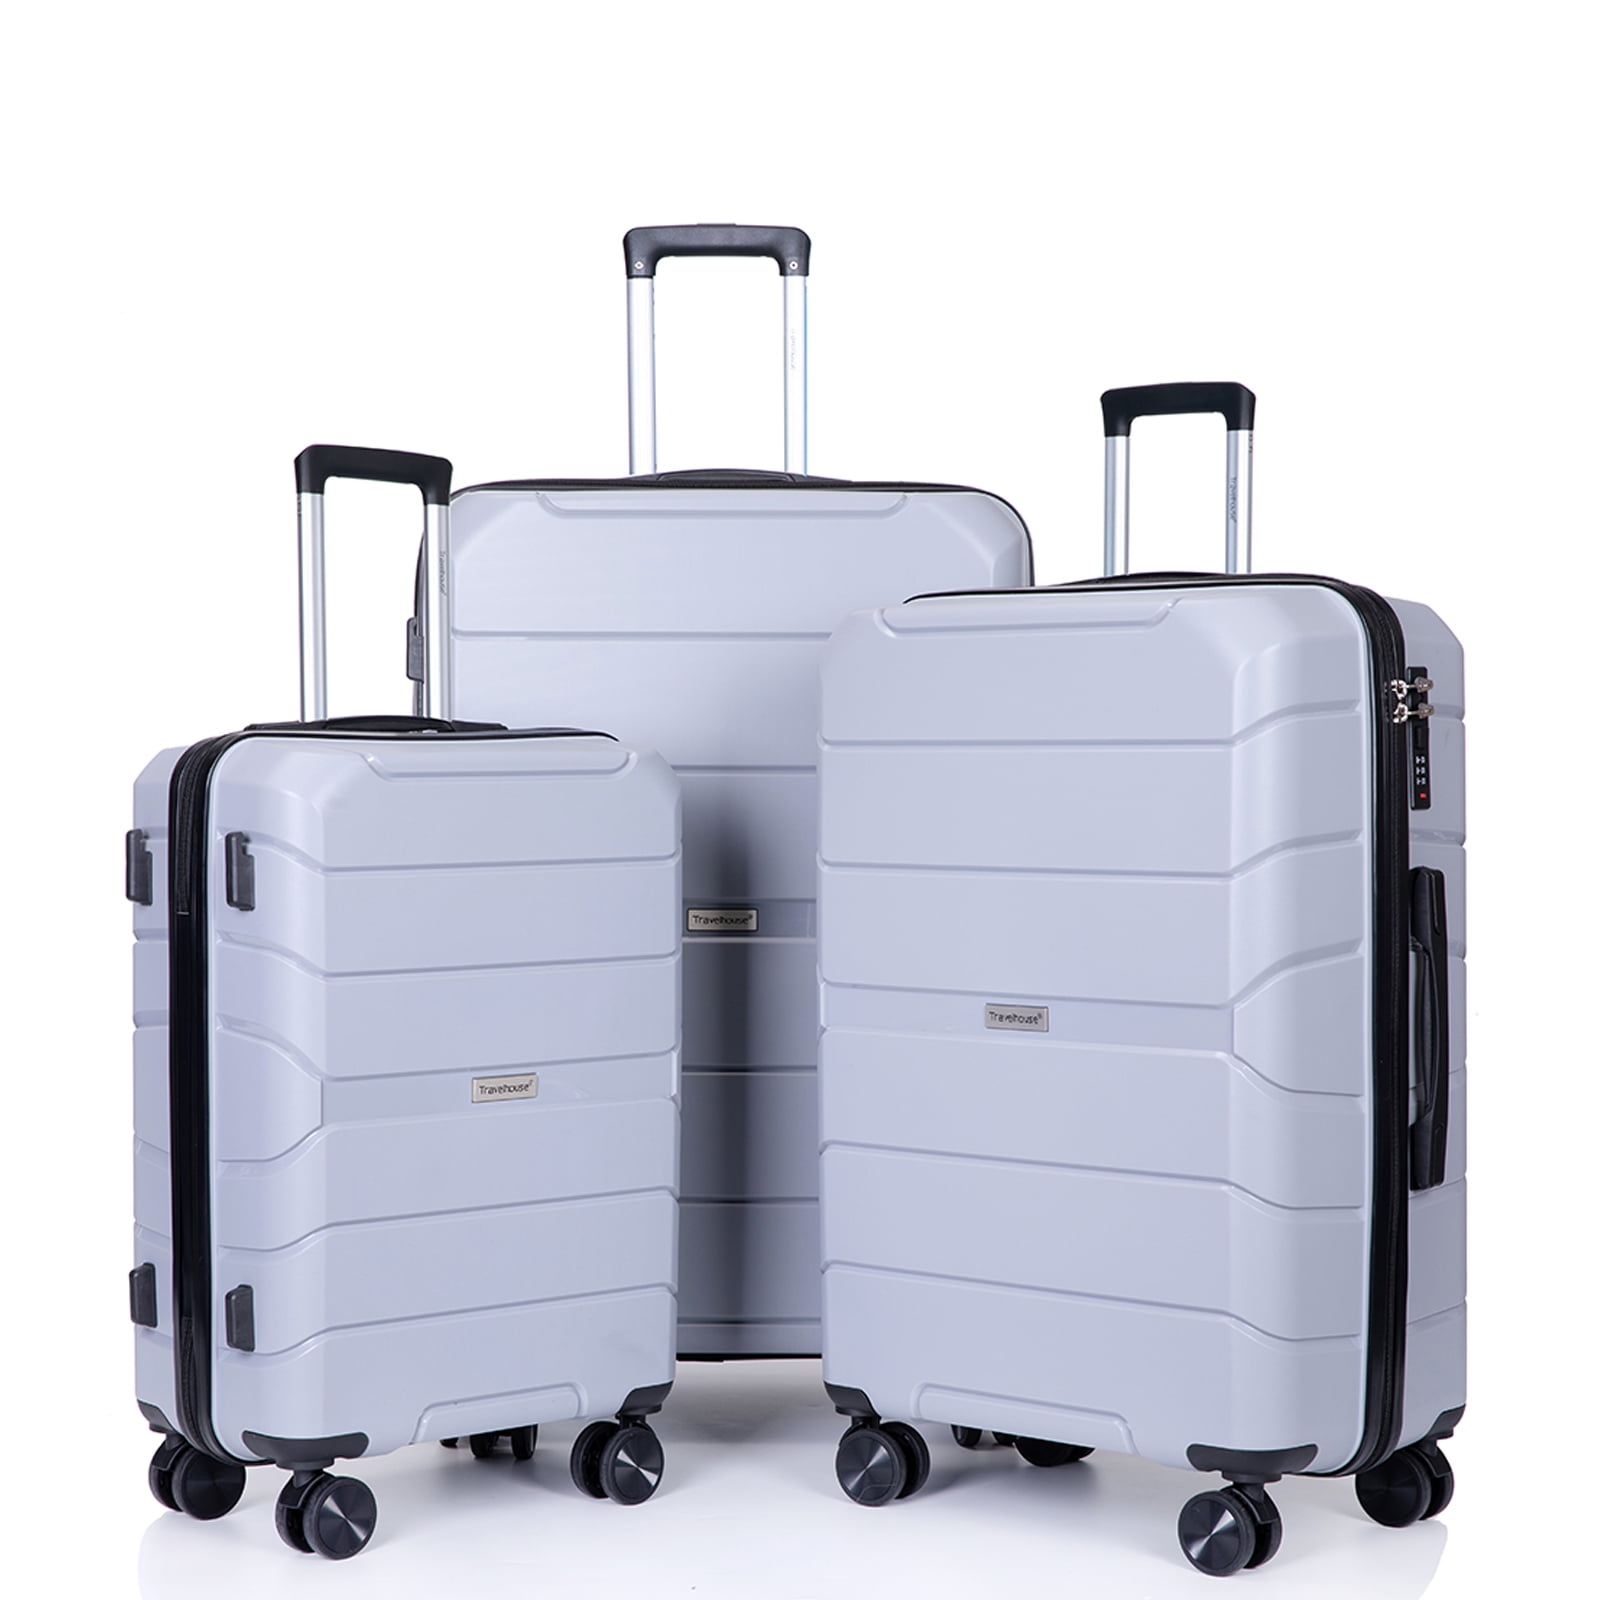 Travelhouse Luggage 3 Piece Set Hardshell Lightweight Suitcase with TSA  Lock Spinner Wheels. (Sliver) 